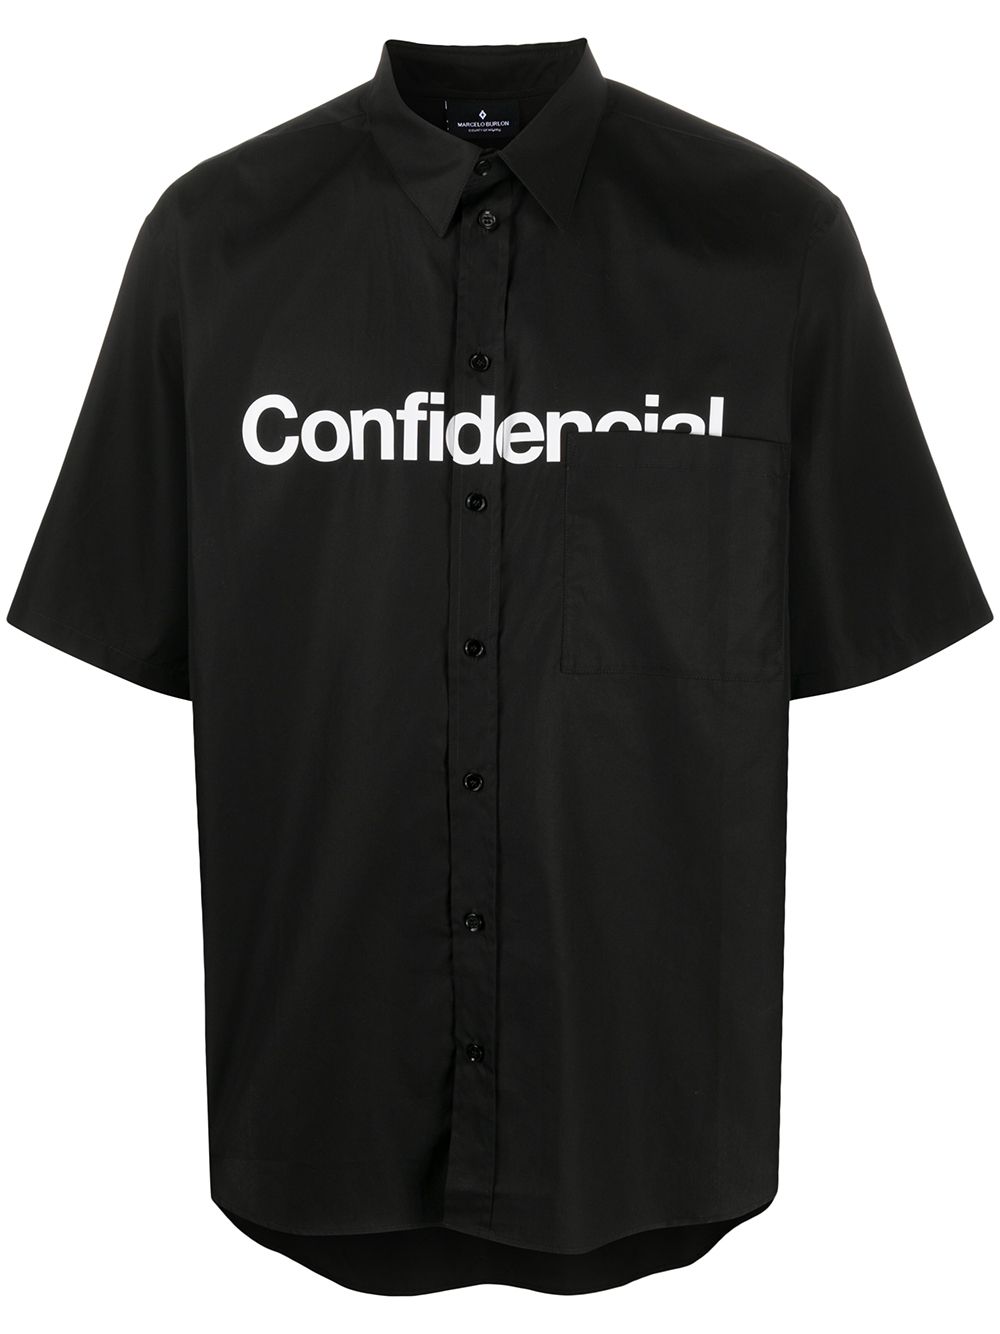 Marcelo Burlon County of Milan рубашка с принтом Confidential